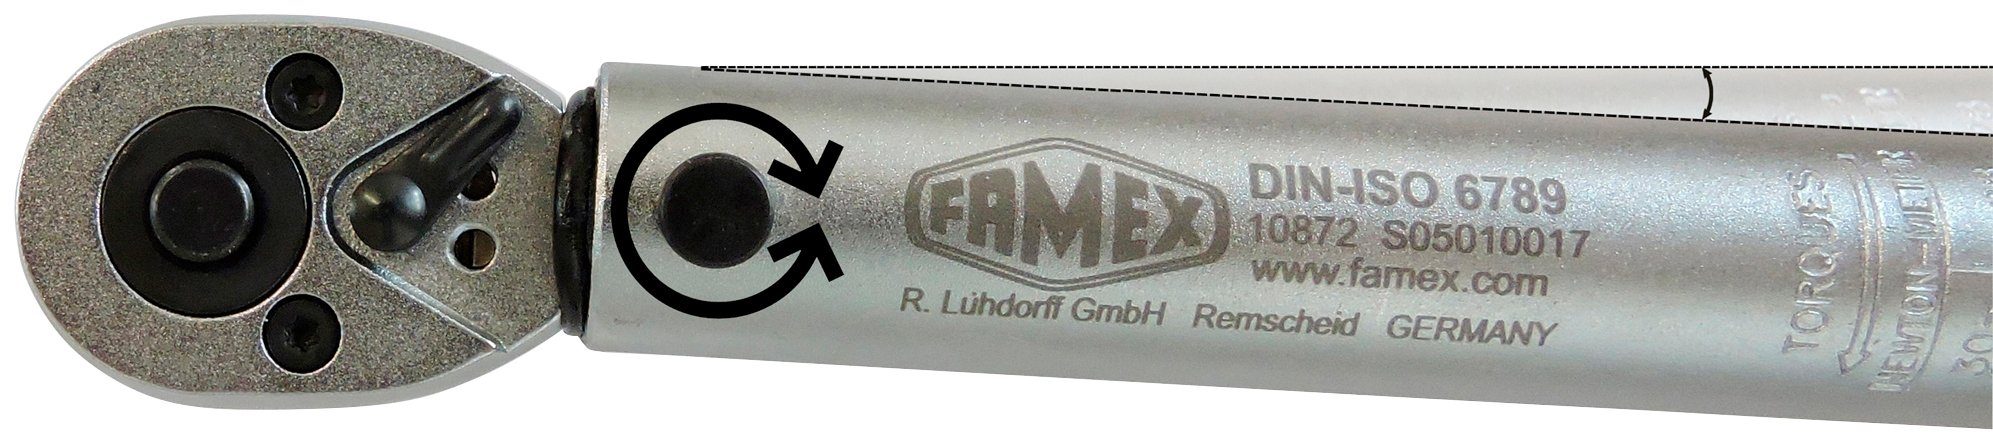 FAMEX - Drehmomentschlüssel 20-110 R+L, Nm 10 (3/8-Zoll)-Antrieb, mm - 10869 PROFESSIONAL